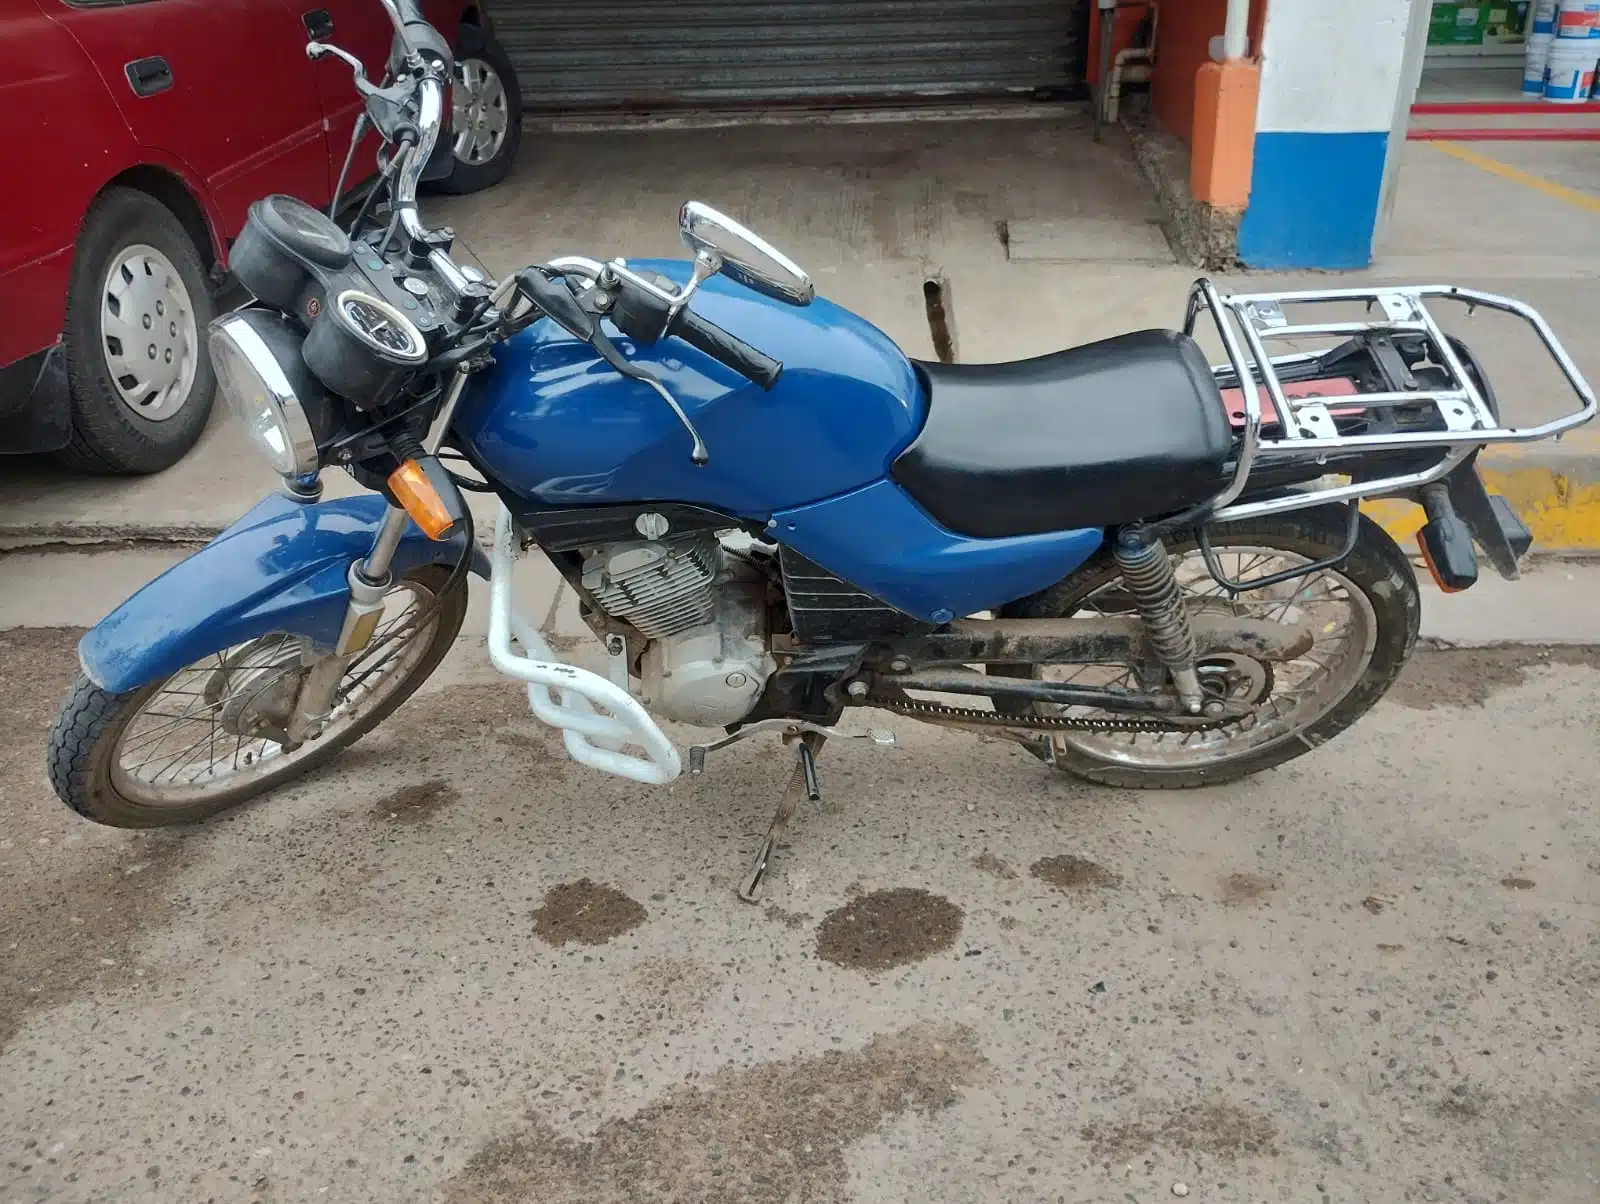 La motocicleta con reporte de robo fue decomisada por los policías.